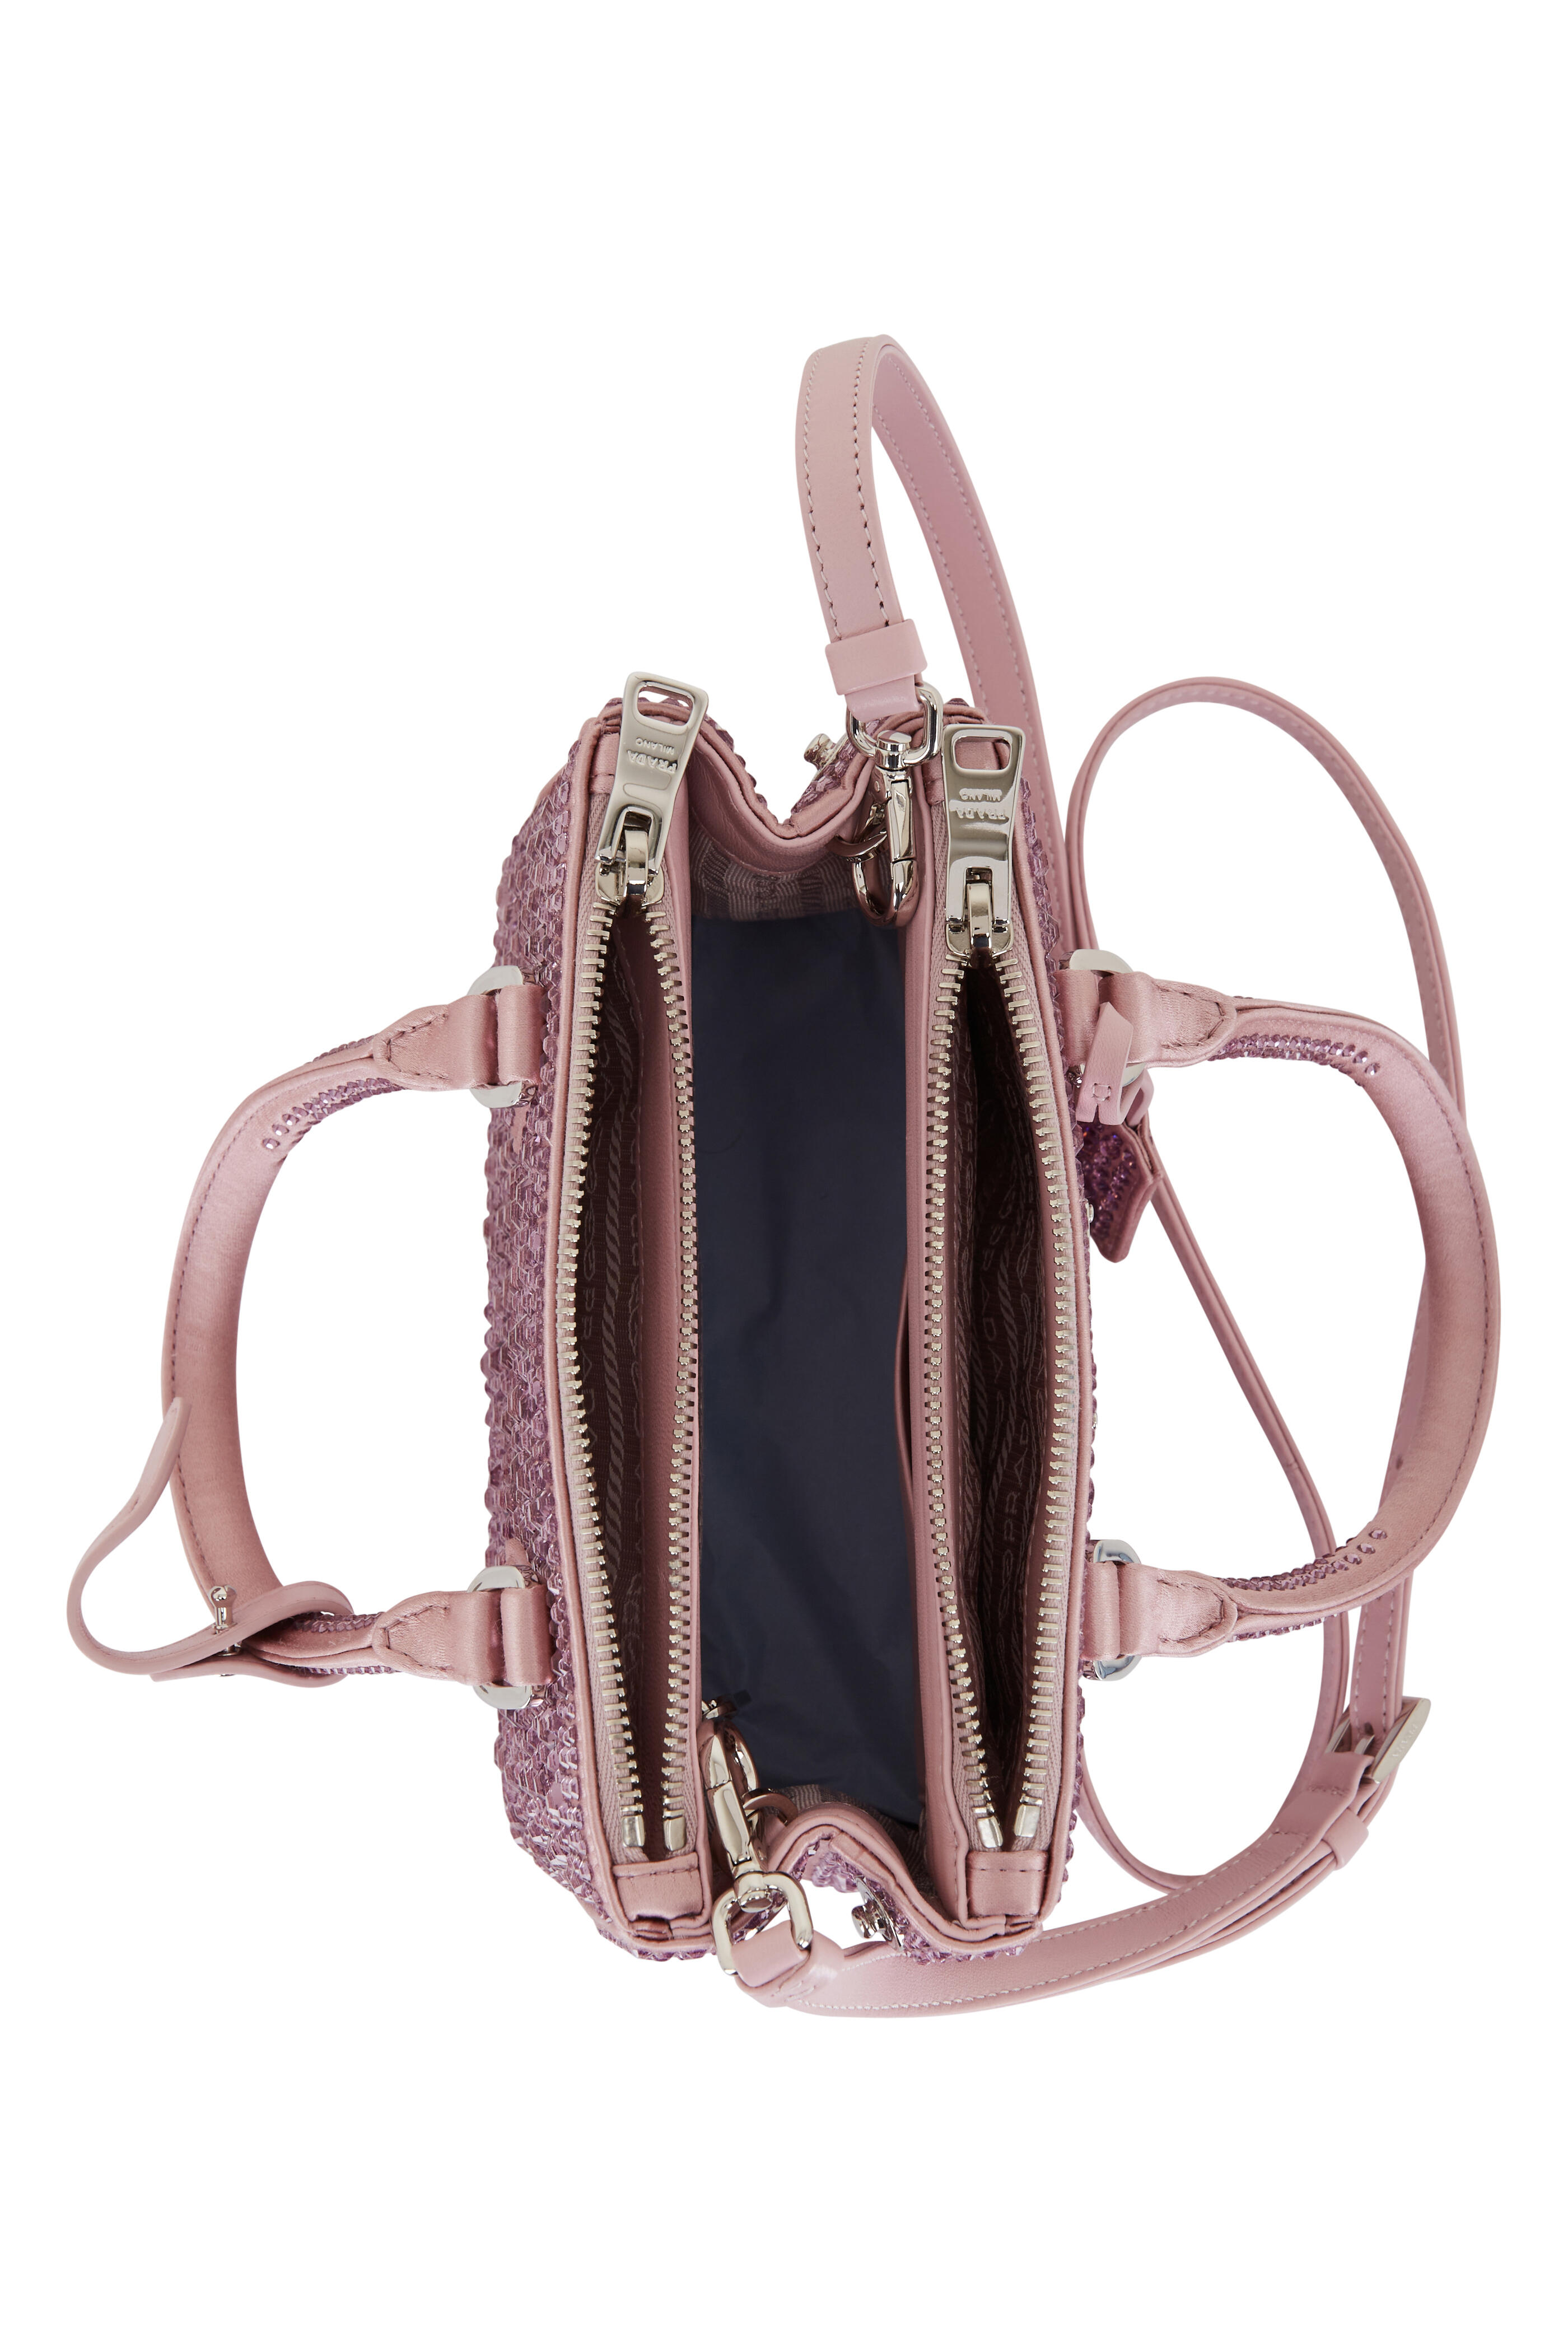 Prada Pink Crossbody Bags